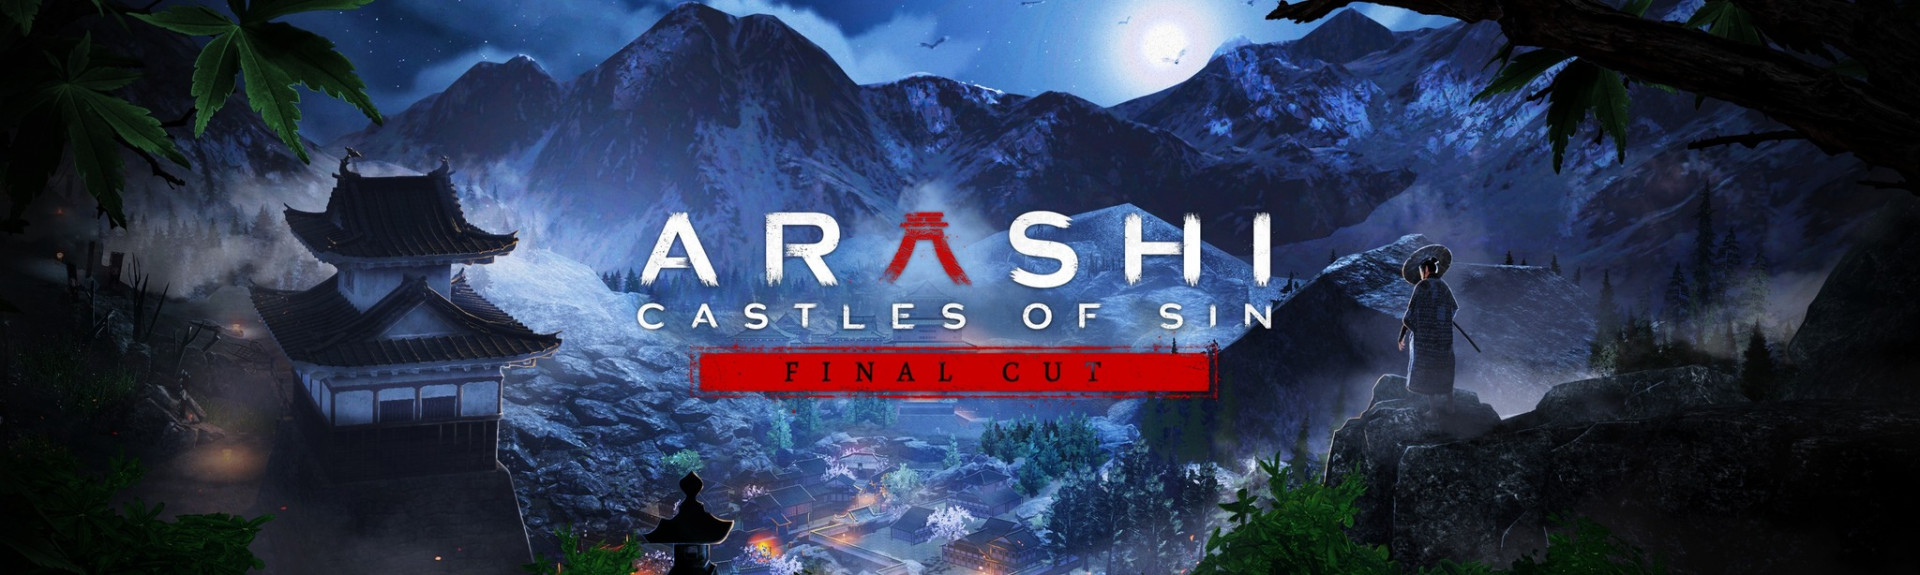 Arashi: Castle of Sin - Final Cut